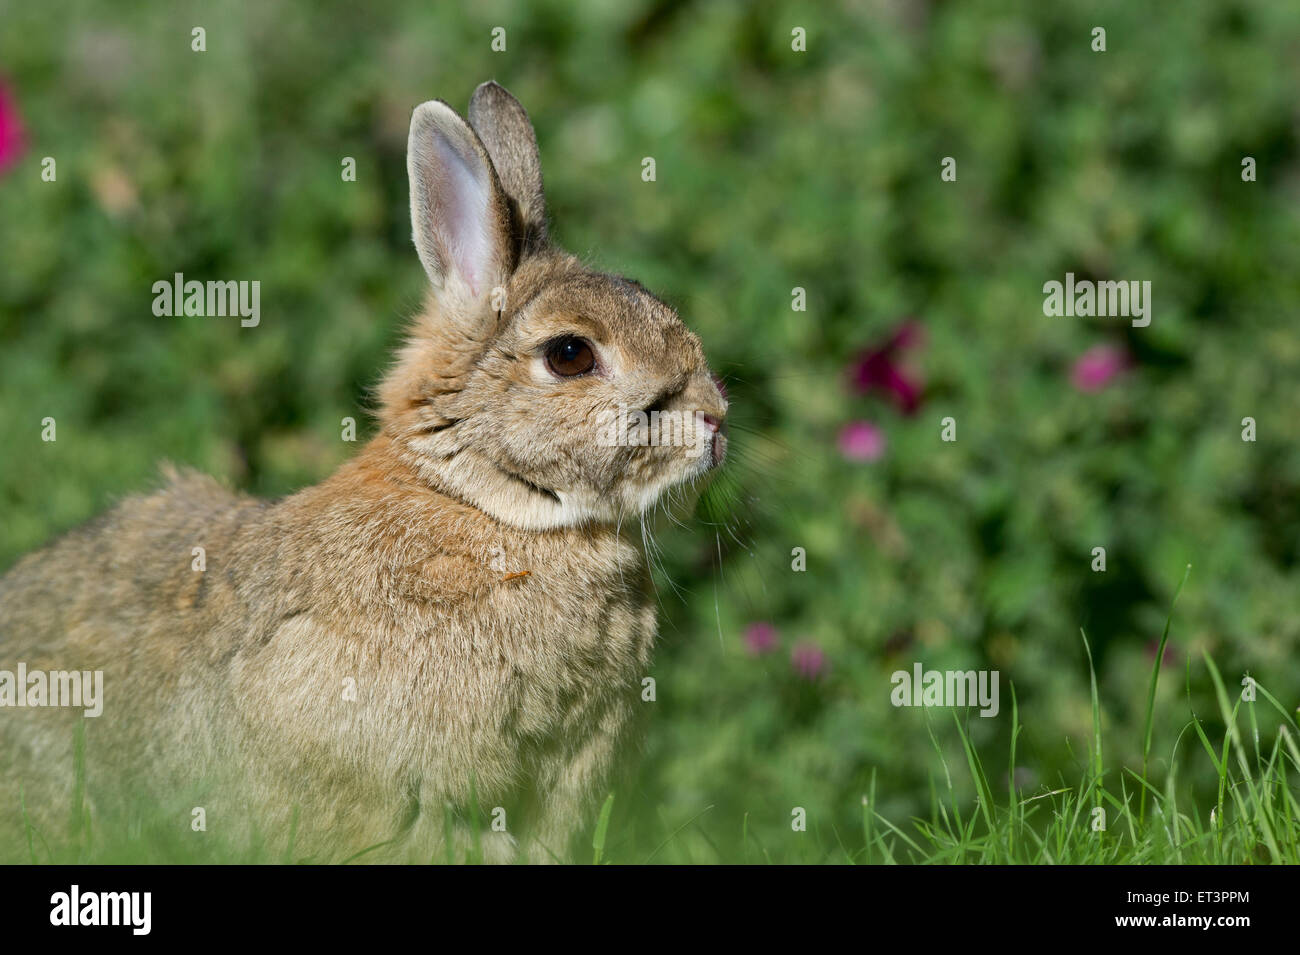 Netherland Dwarf lapin domestique (Oryctolagus cuniculus) dans un jardin. Banque D'Images